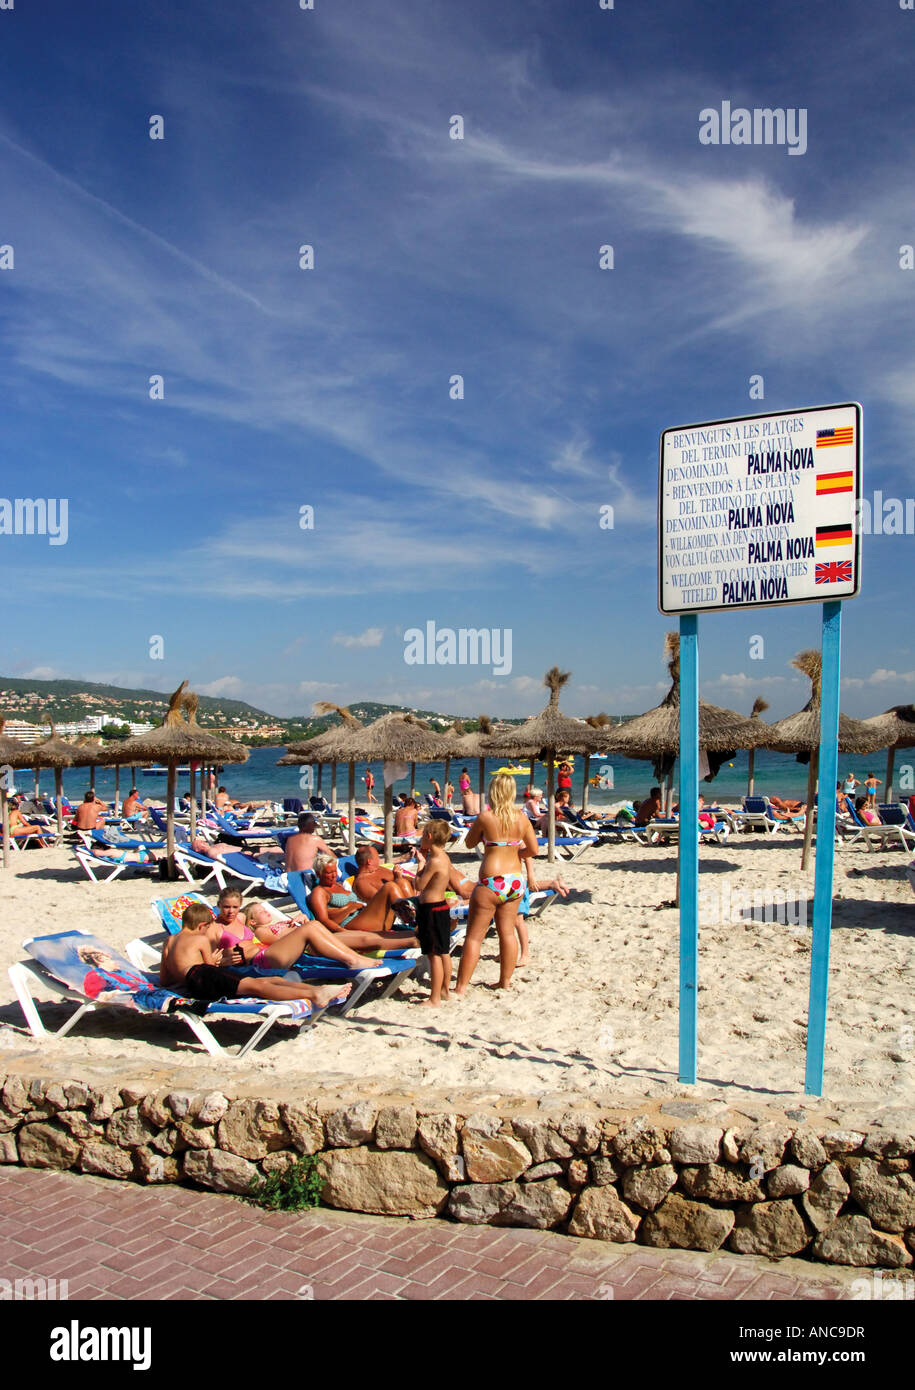 location sign and people Palma Nova beach Majorca Spain Stock Photo